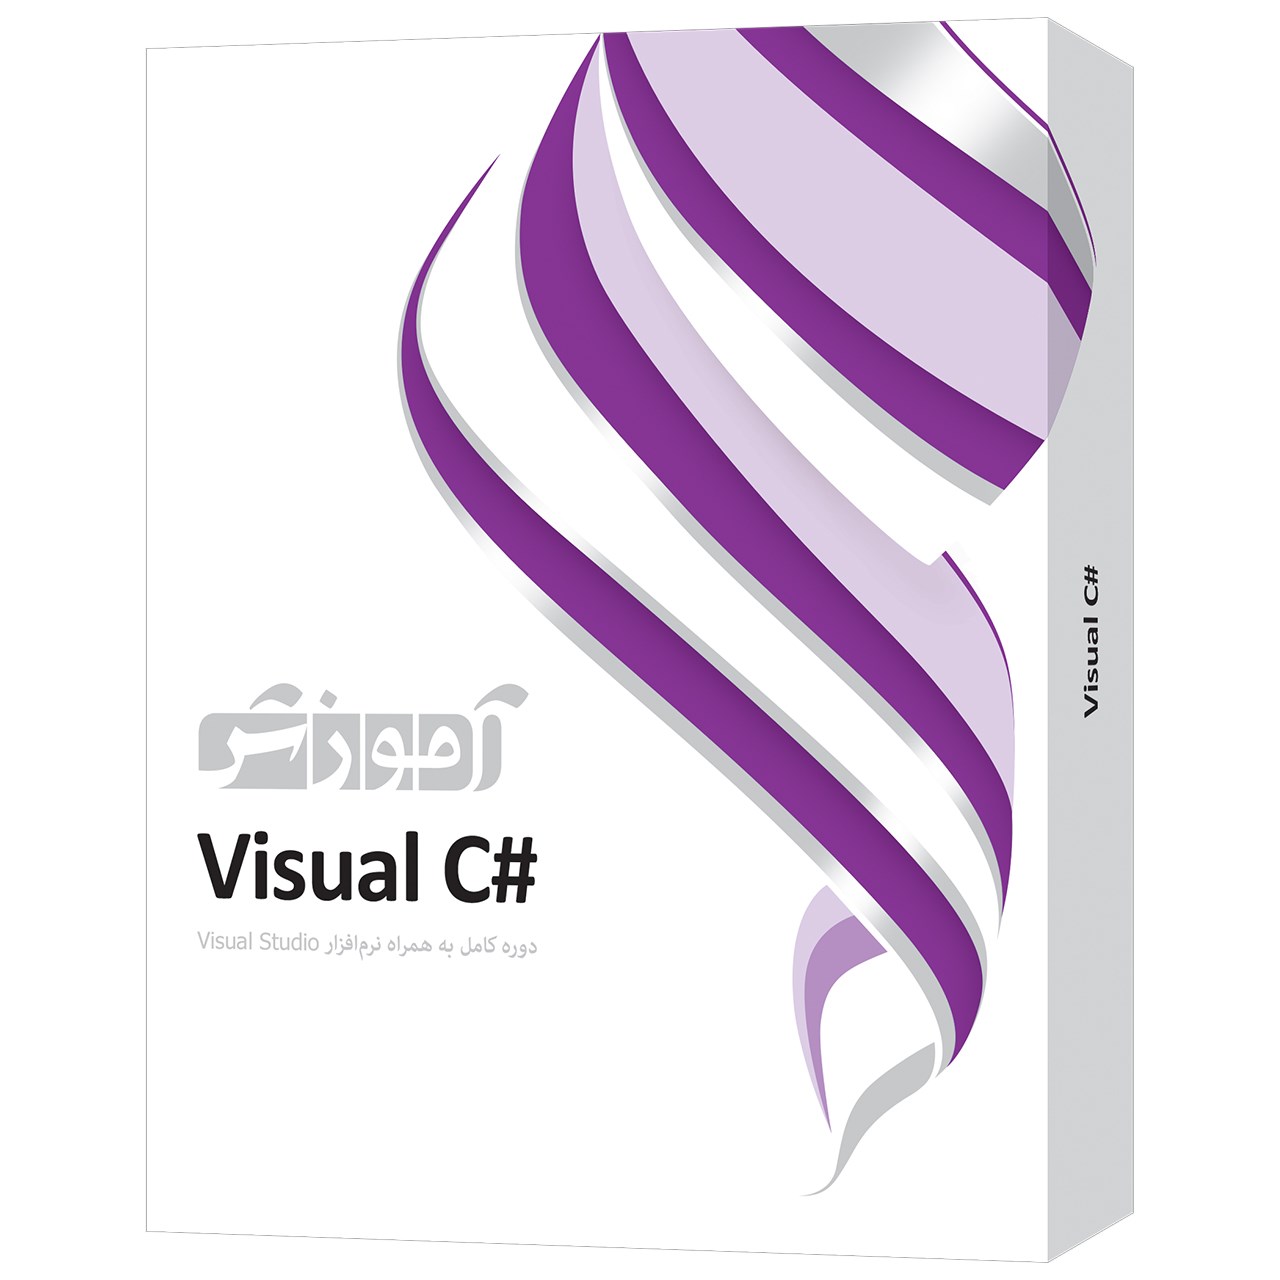 نرم افزار آموزش #Visual C سطح مقدماتی تا پیشرفته شرکت پرند